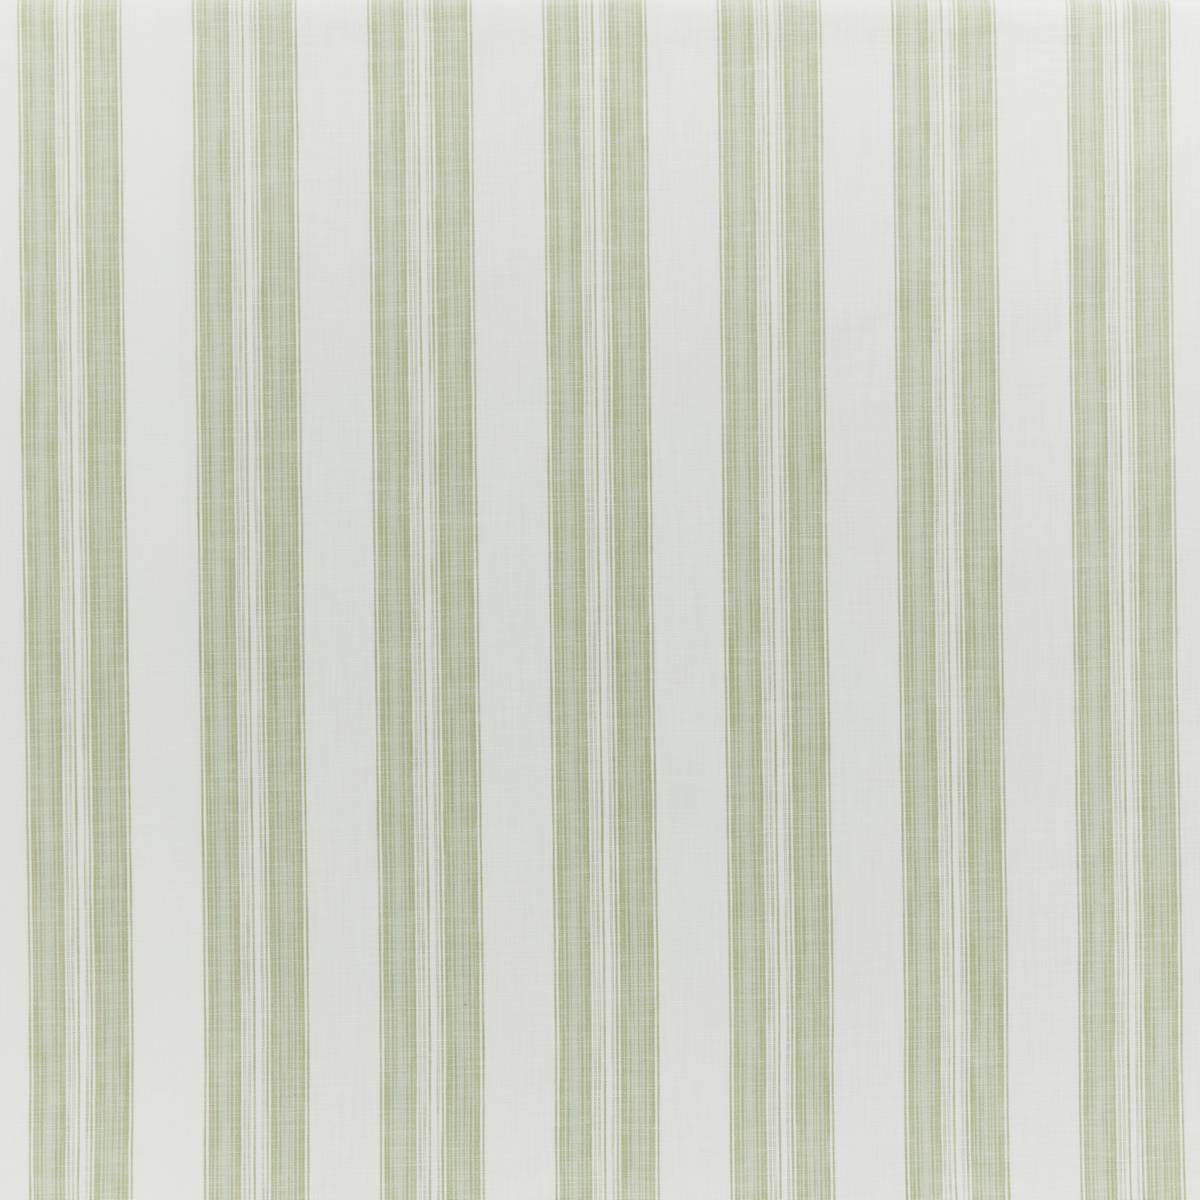 Barley Stripe Fennel Fabric by iLiv